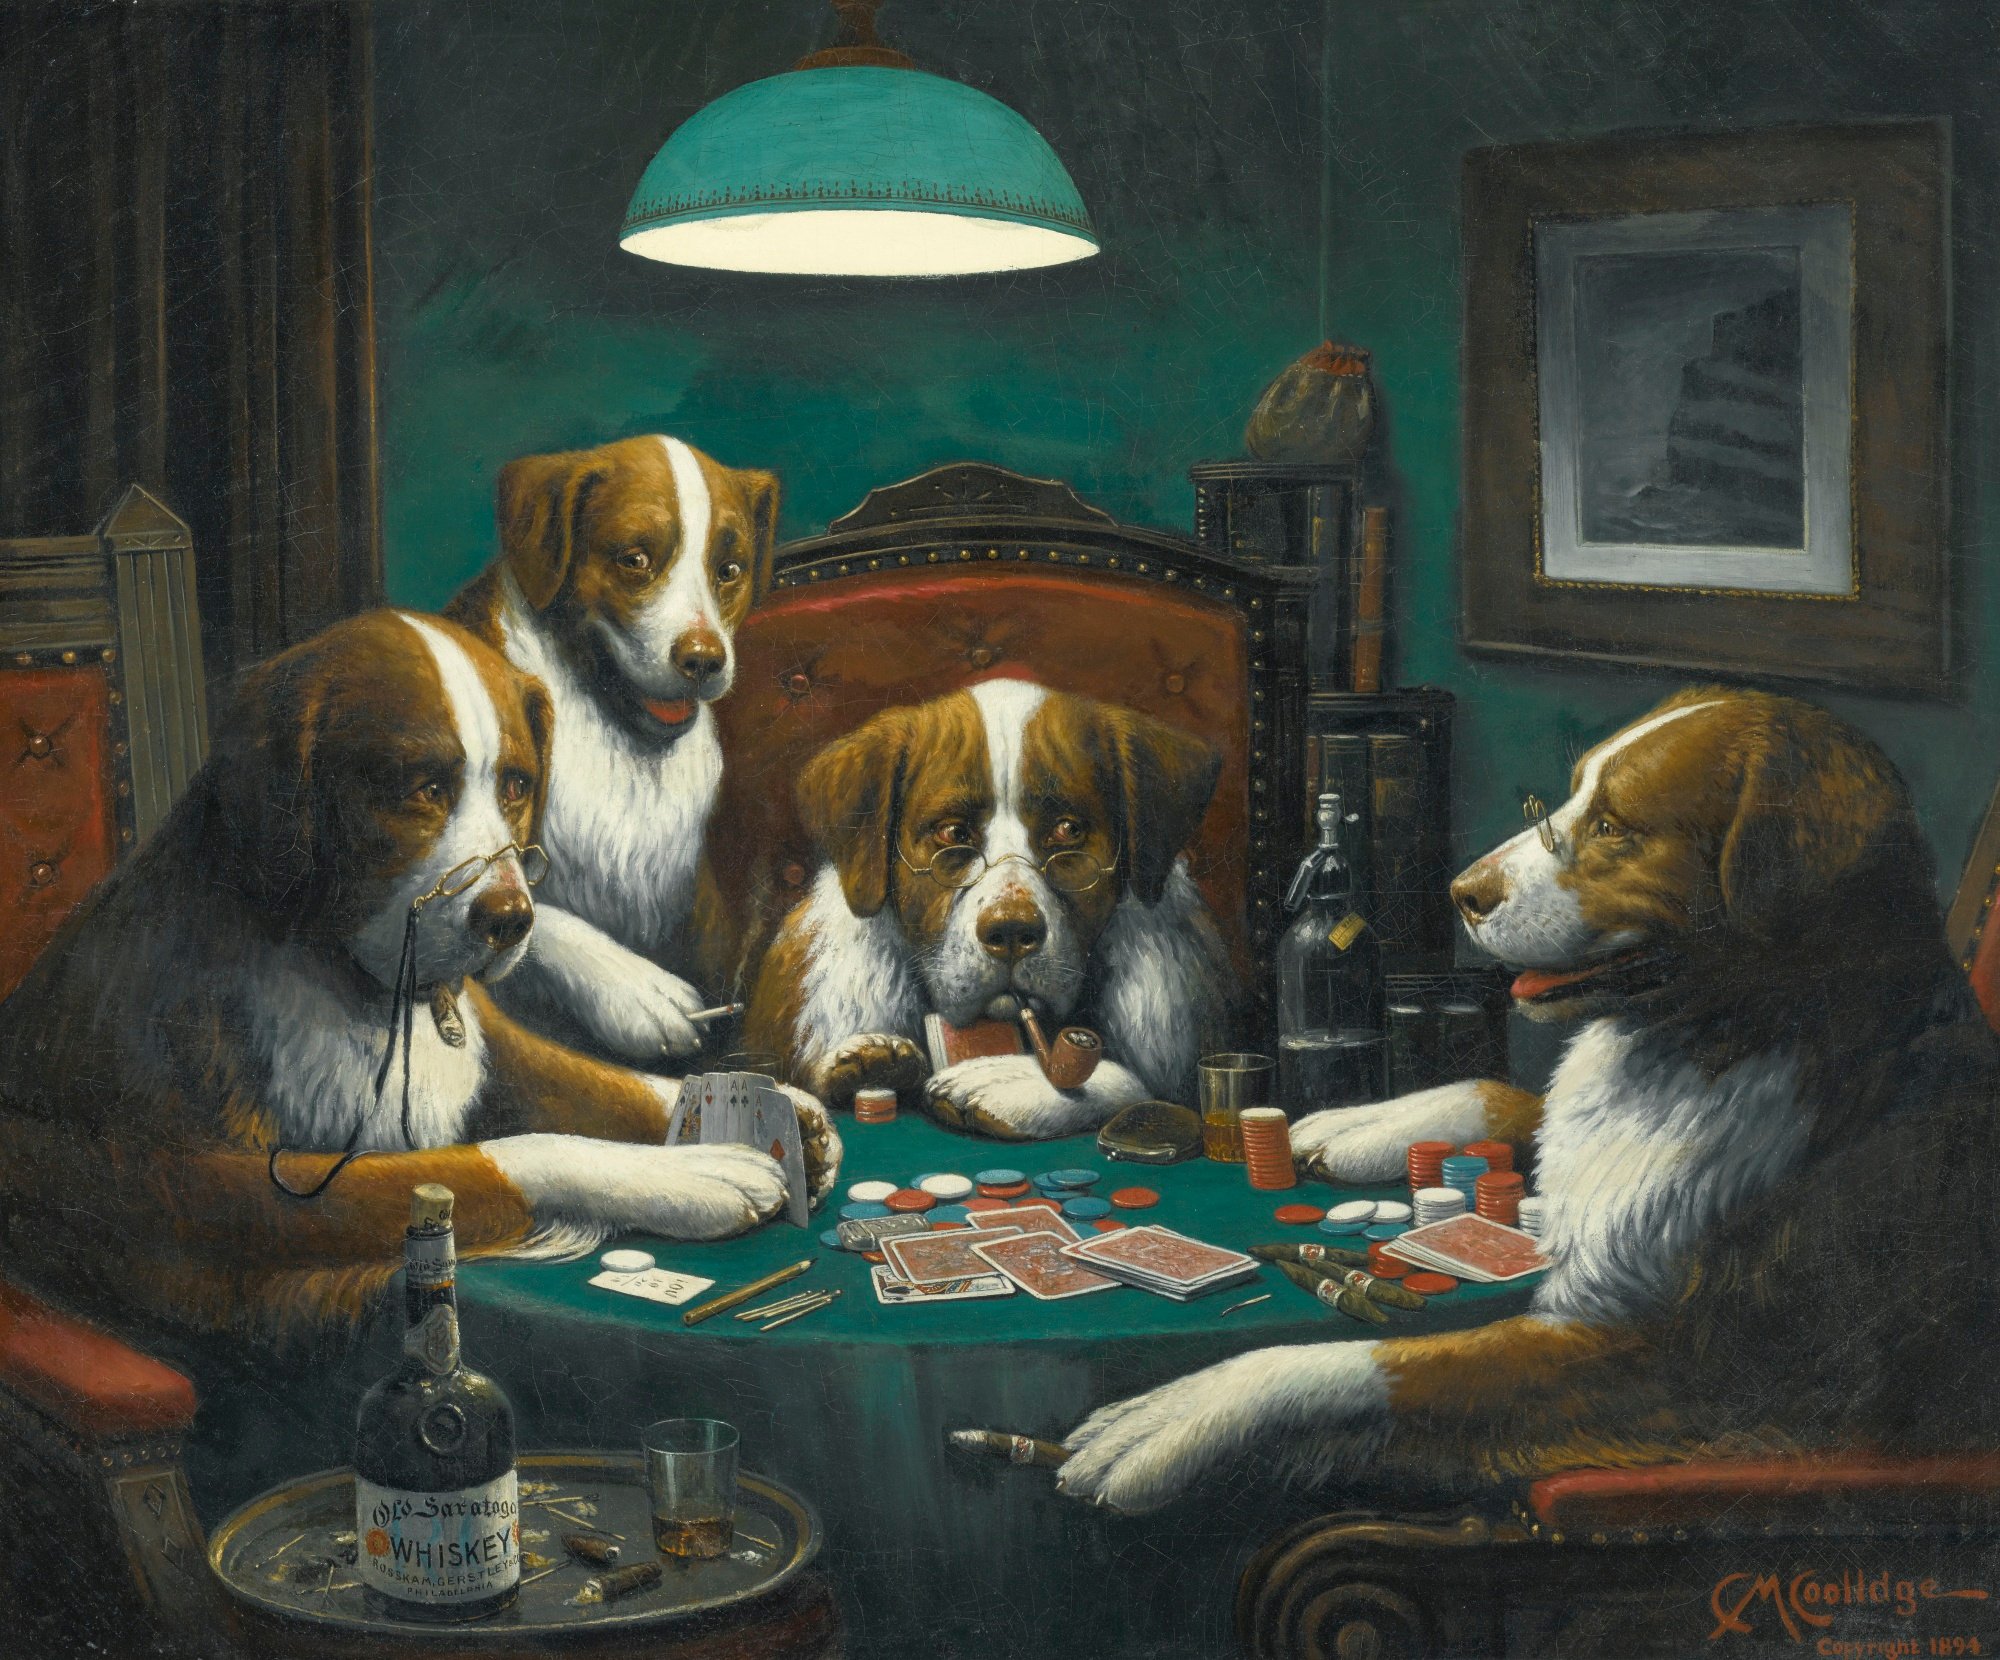 Das Gemälde "Poker Game" von Cassius Marcellus Coolidge aus dem Jahr 1894 ist das erste Bild aus der Reihe "Dogs Playing Poker".